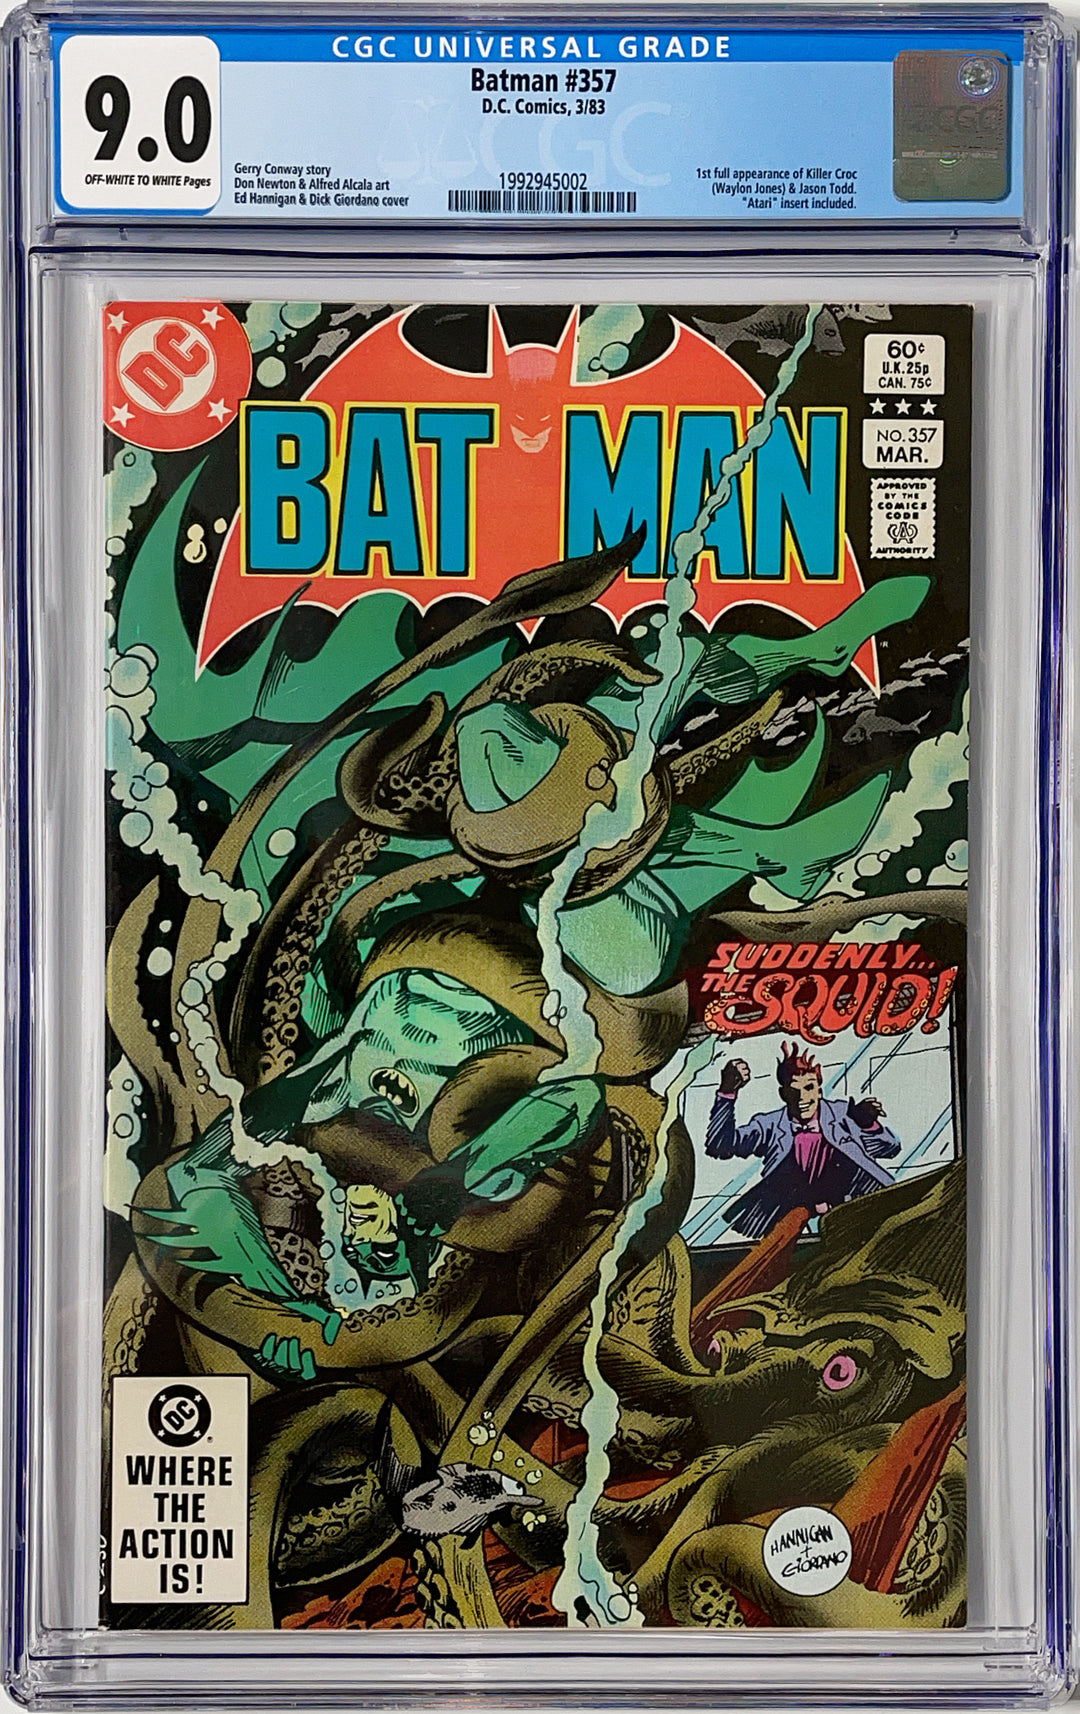 Batman, Vol. 1 #357 - CGC 9.0